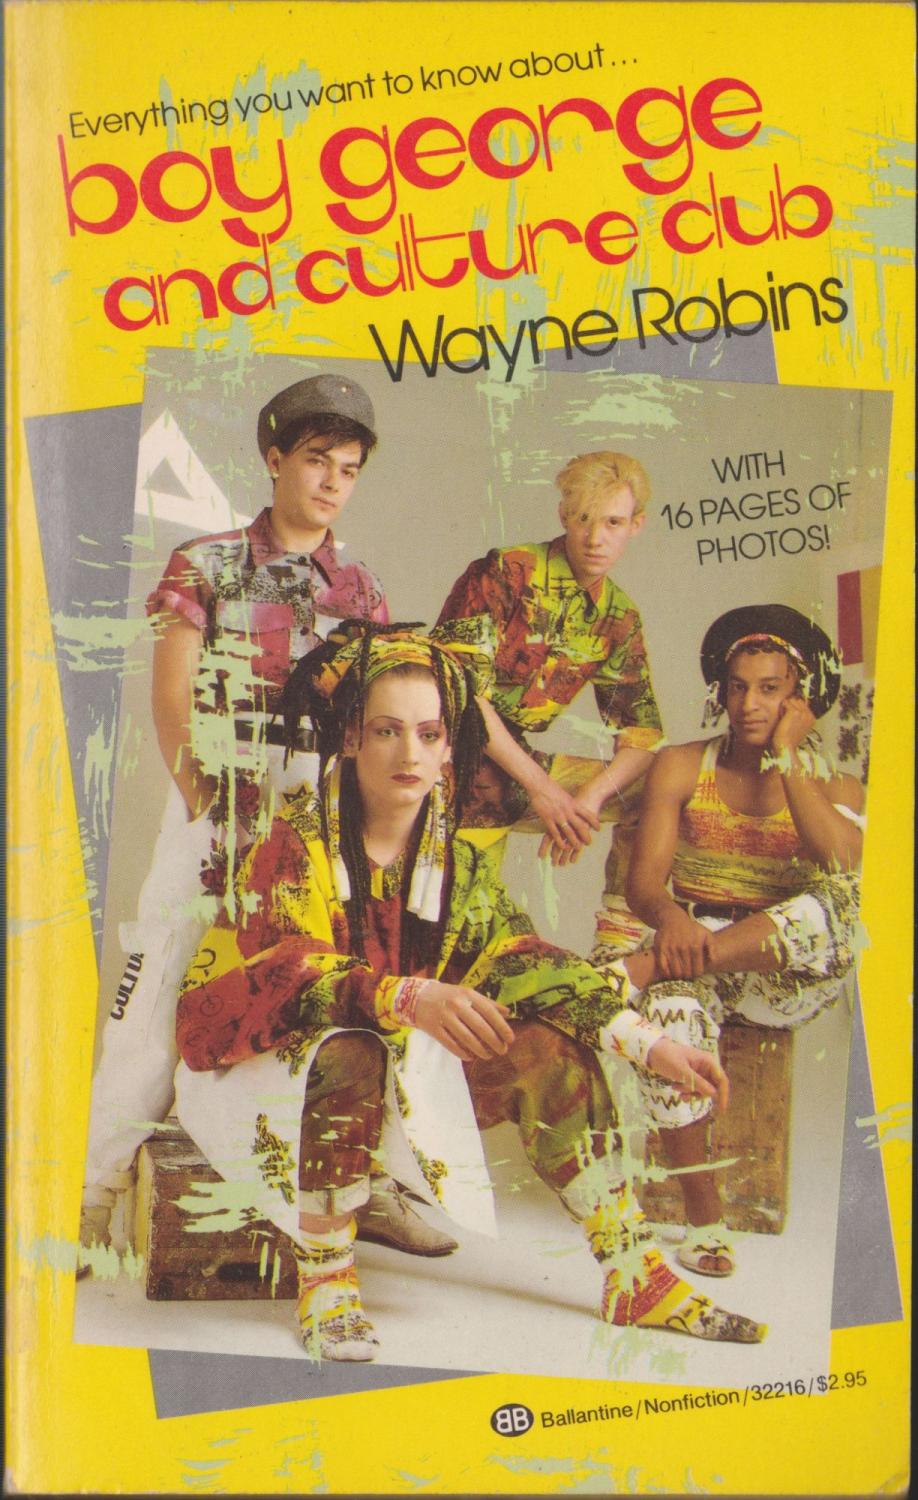 Boy George and Culture Club - Robins, Wayne